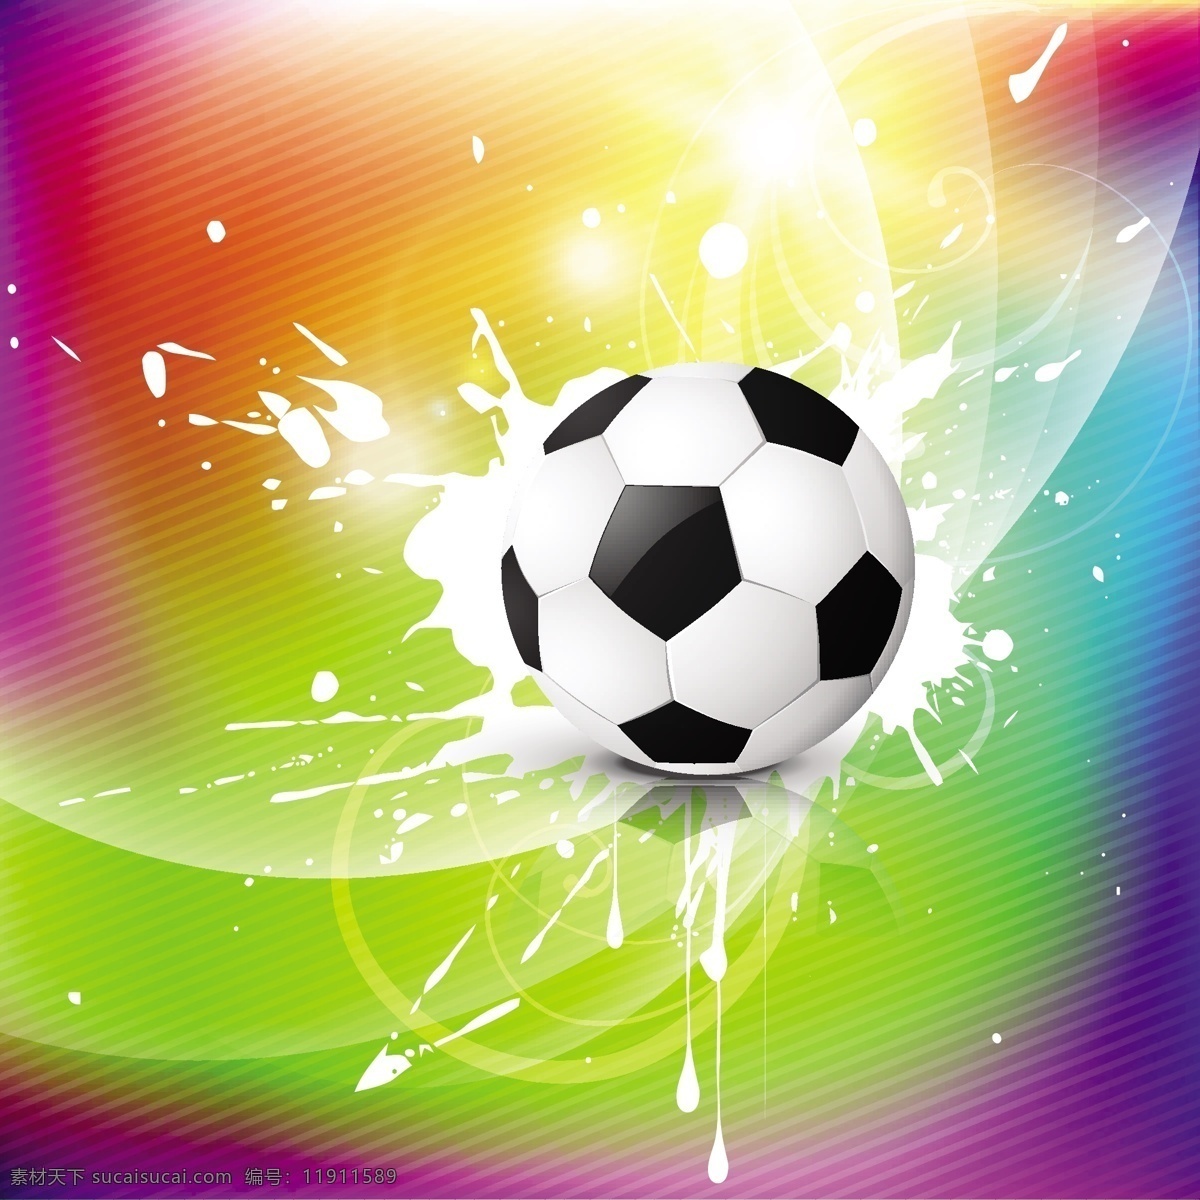 足球背景 足球 足球比赛 世界杯 足球素材 足球元素 潮流元素 动感足球 矢量 体育 休闲娱乐体育 文化艺术 体育运动